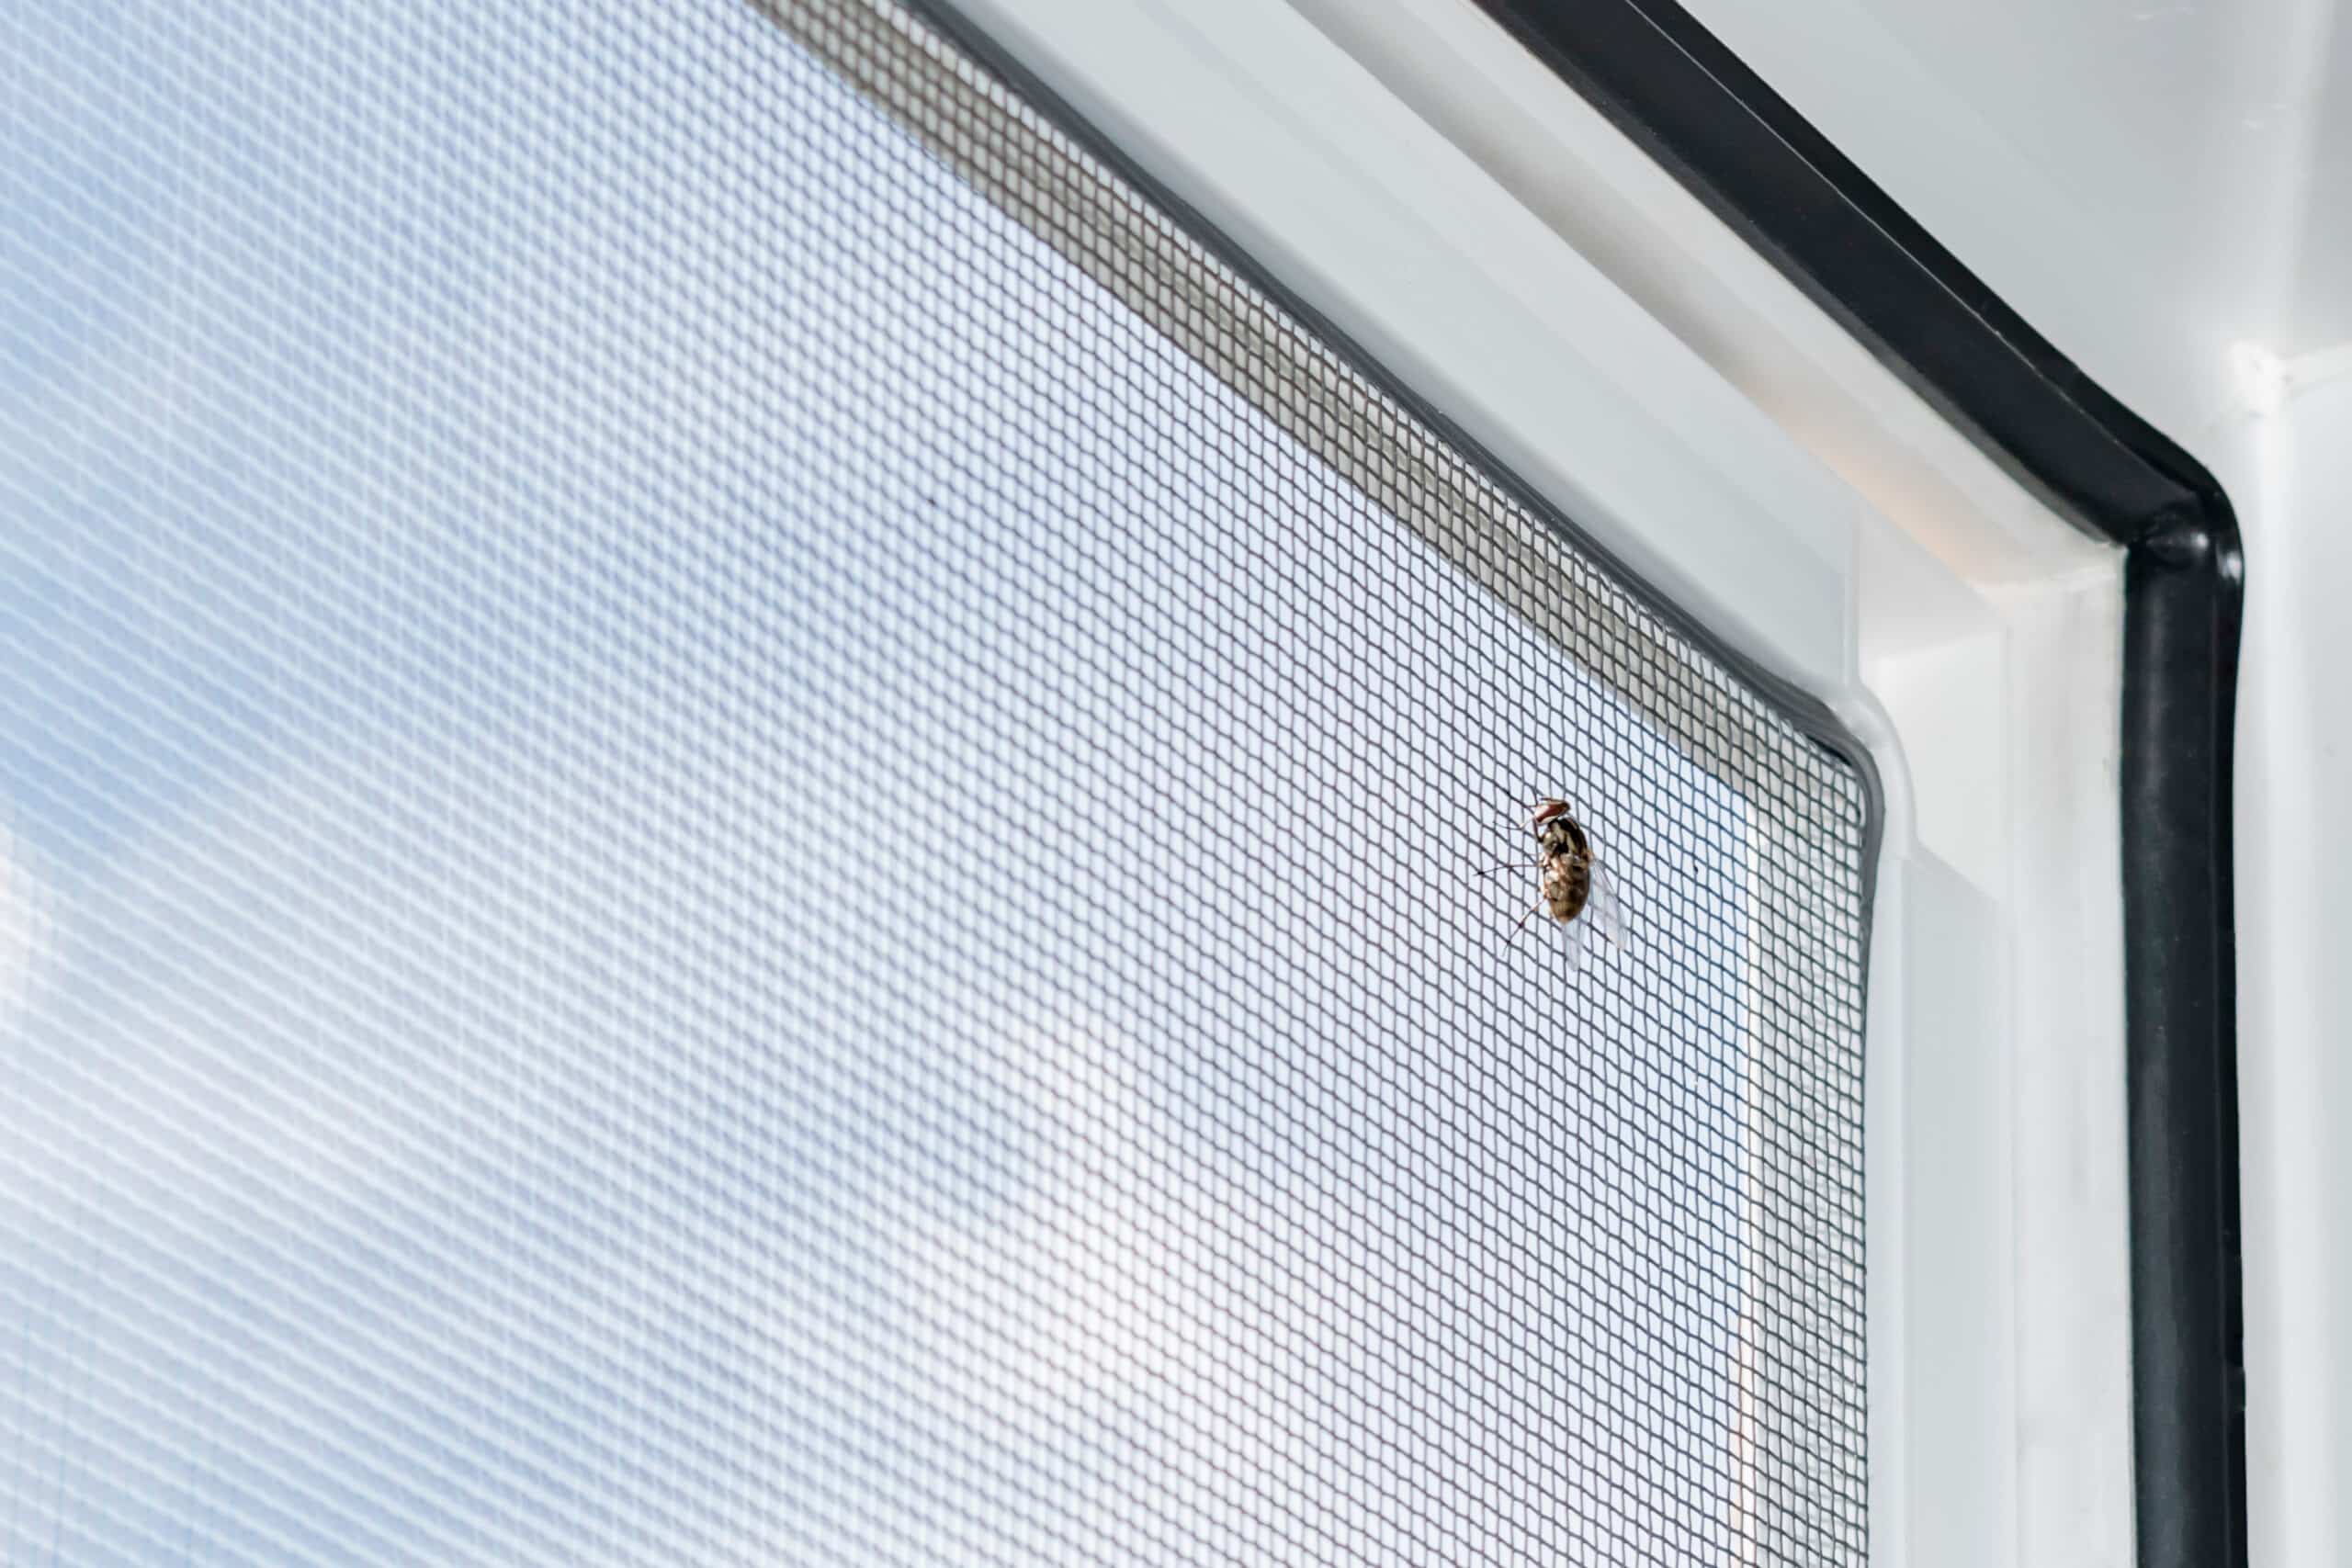 Des insectes, dans ma fenêtre?